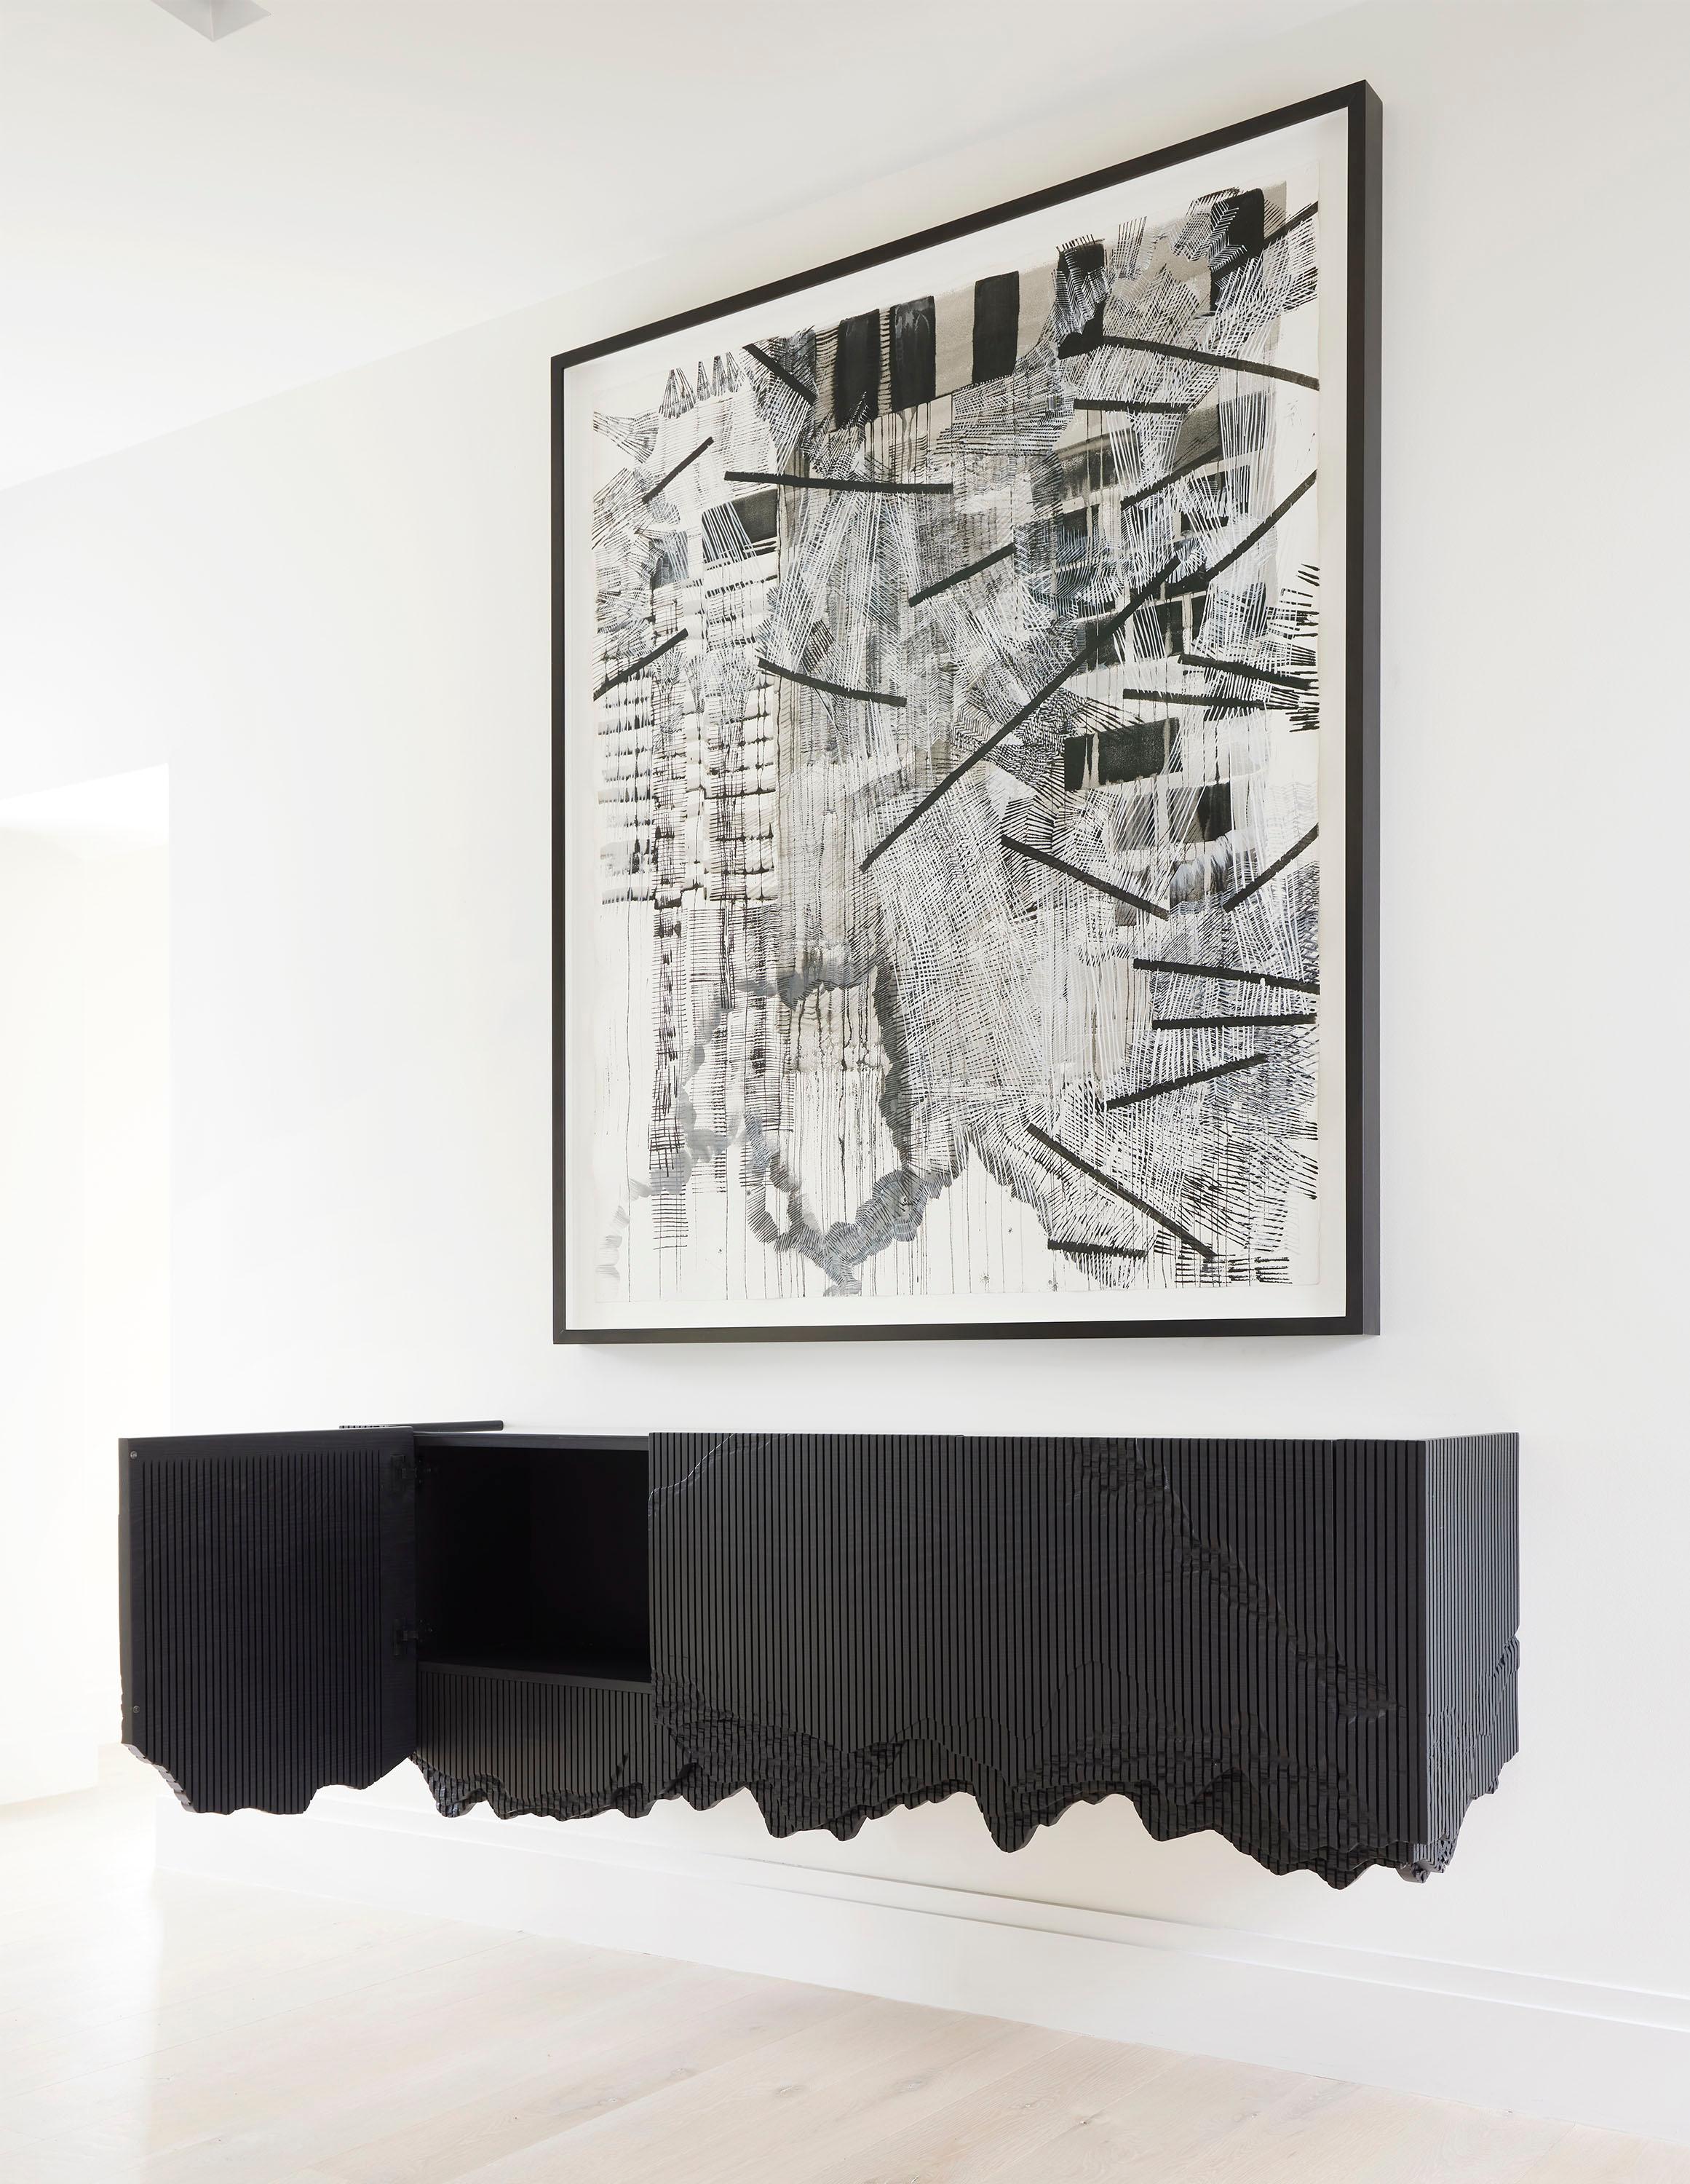 Ledge est une console flottante, fixée au mur, en frêne massif avec un plateau en verre noir. Elle découle d'une exploration matérielle inspirée par les falaises qui entourent l'atelier de Johns, faisant référence à la pierre effritée par le biais